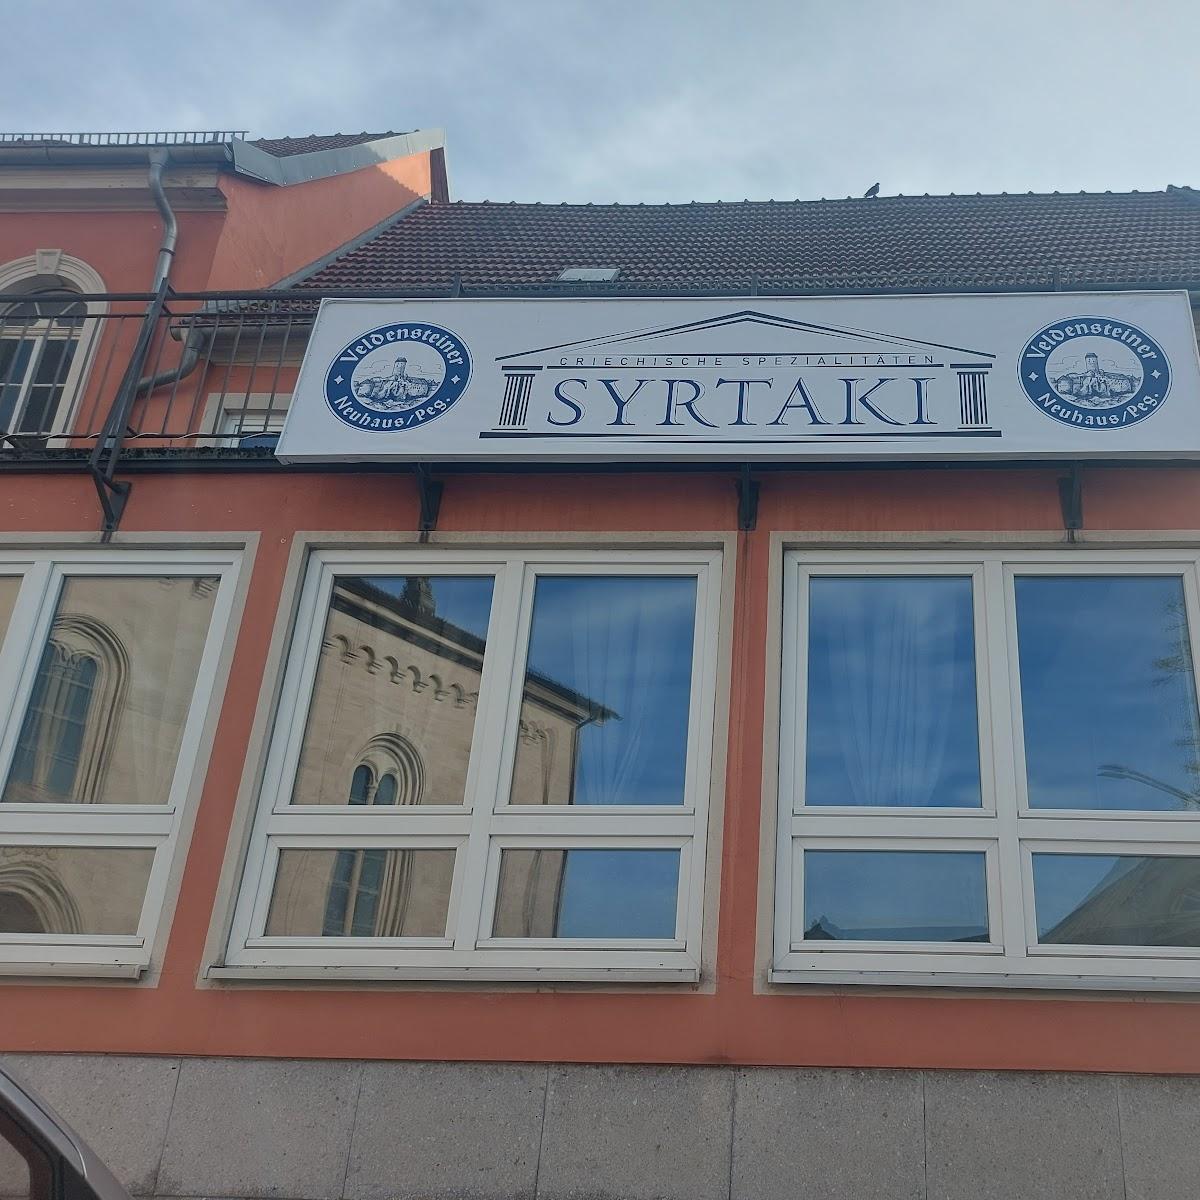 Restaurant "Syrtaki Griechisches Restaurant" in Eltmann